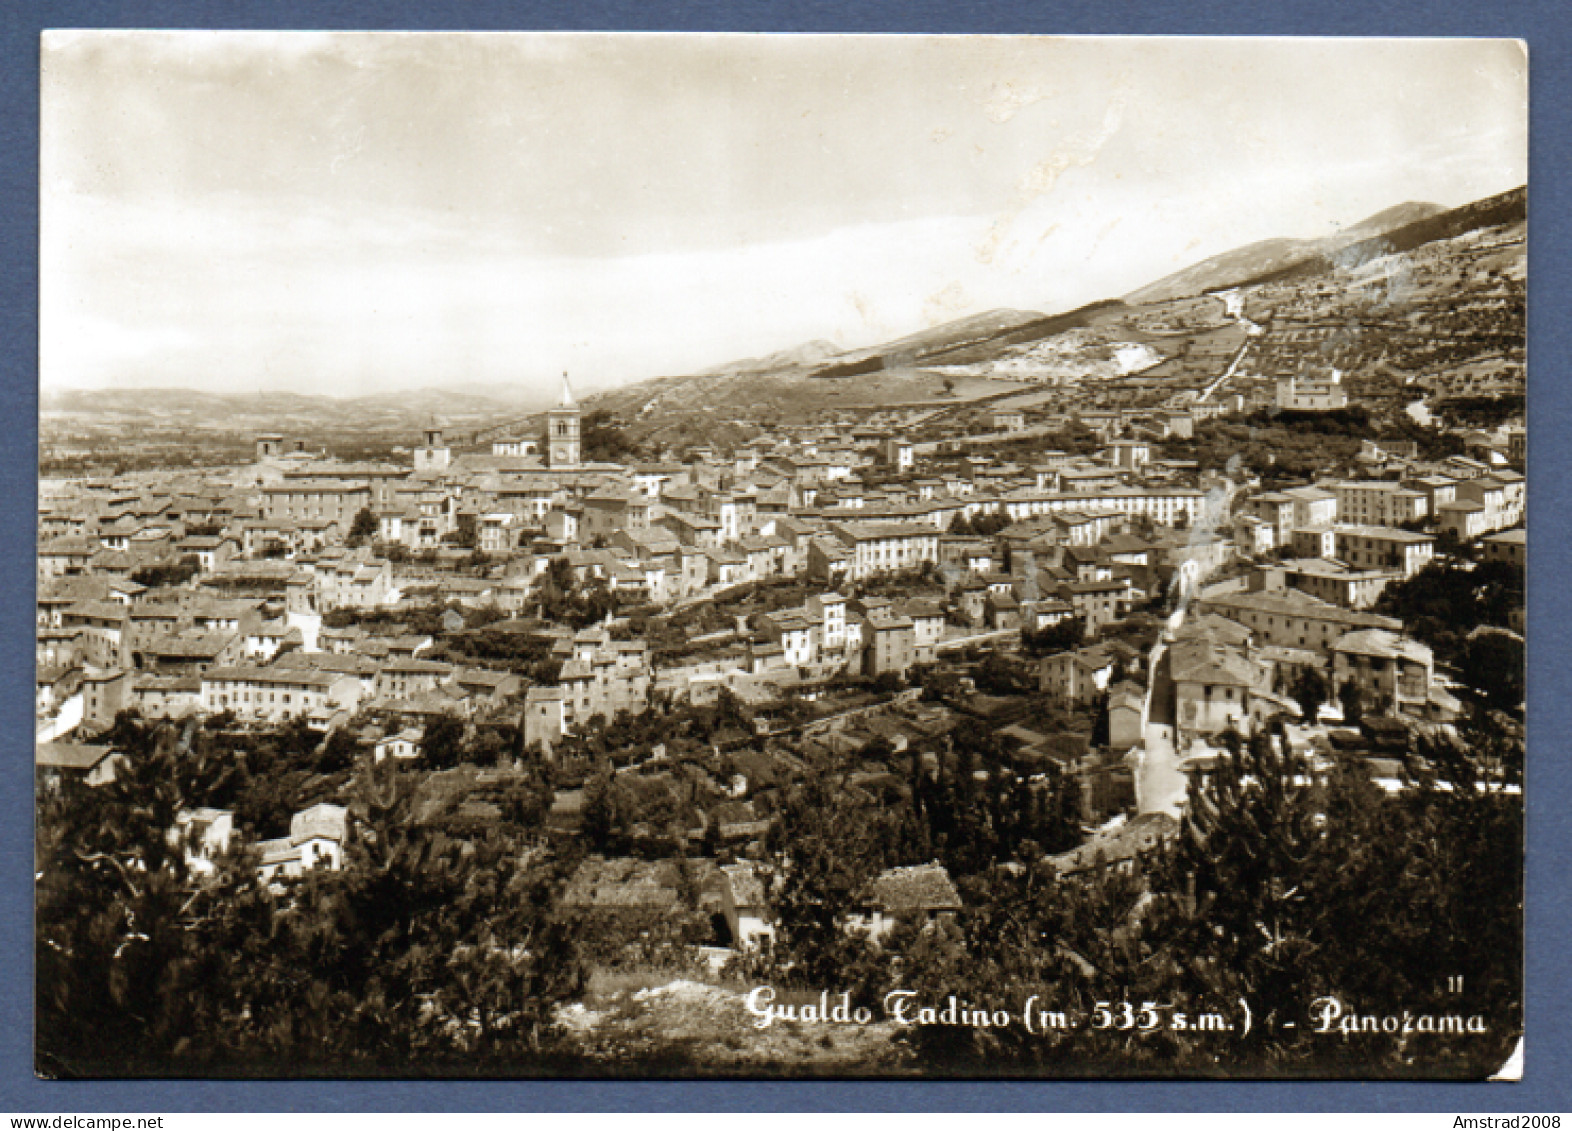 1953 - GUALDO TADINO - PANORAMA  -  ITALIE - Perugia